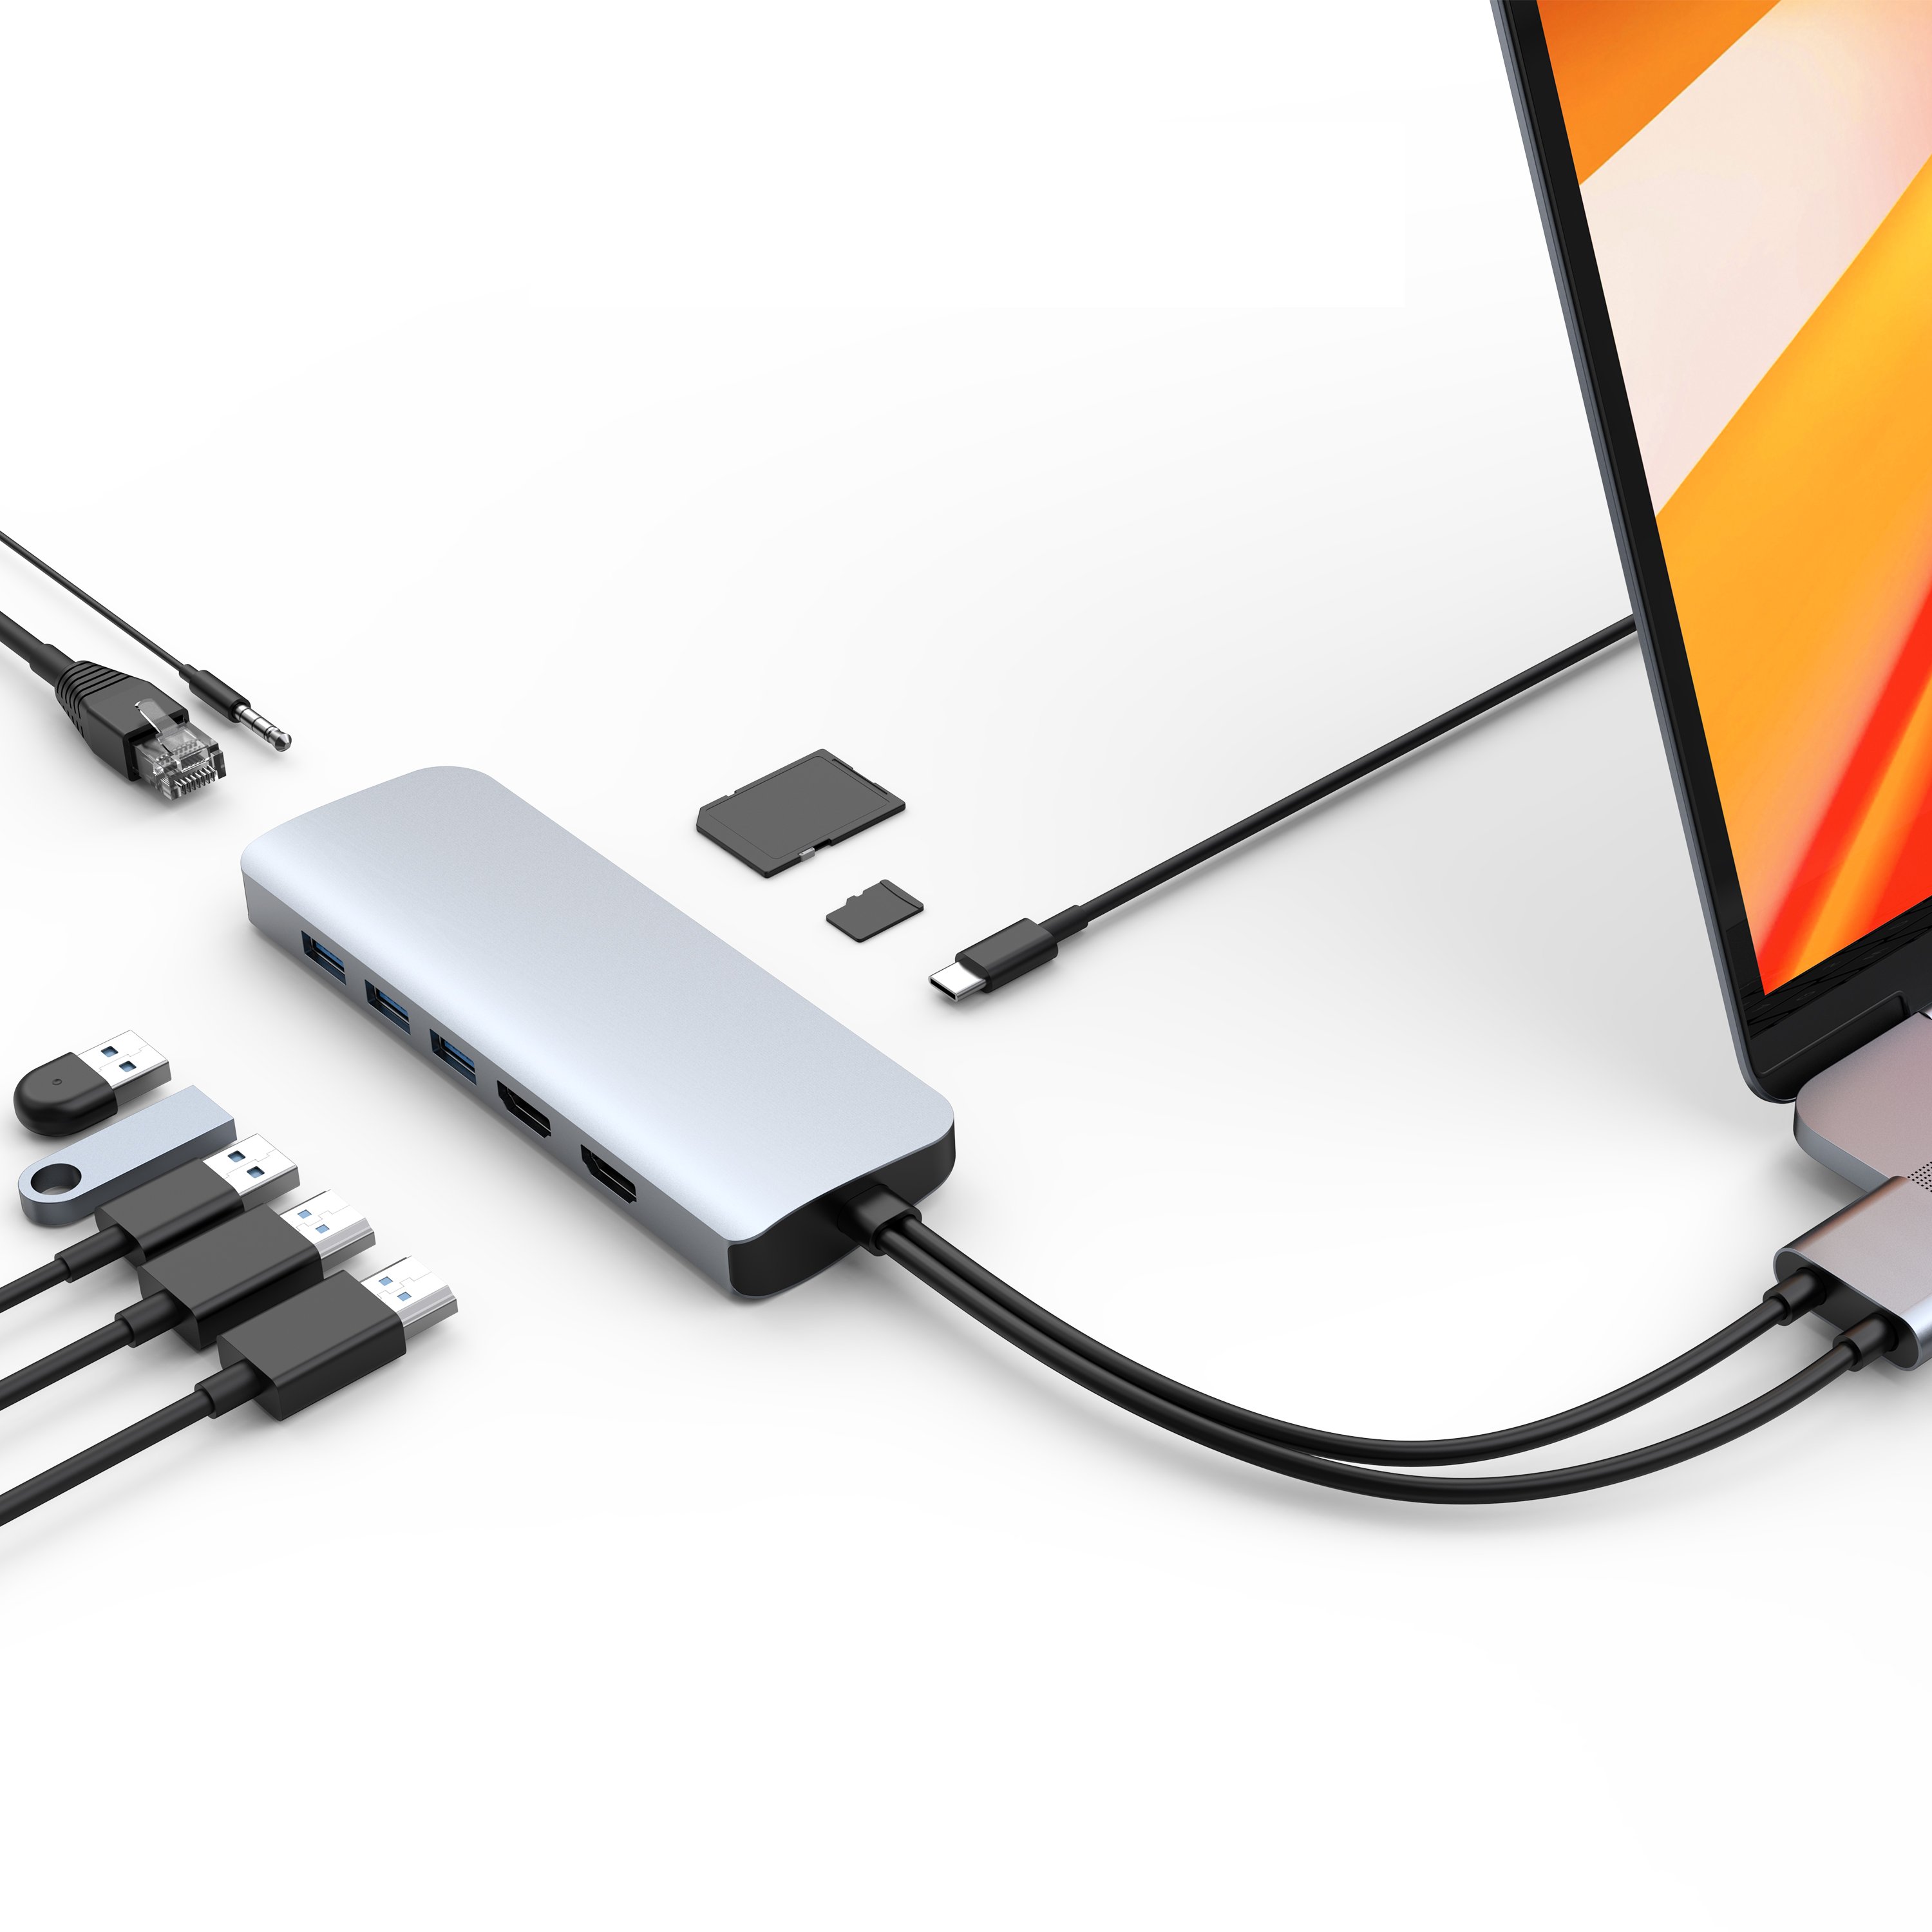 CỔNG CHUYỂN HYPERDRIVE VIBER 10-IN-2 4K60HZ USB-C HUB FOR MACBOOK/IPADPRO/LAPTOP/SMARTPHONE - HÀNG CHÍNH HÃNG